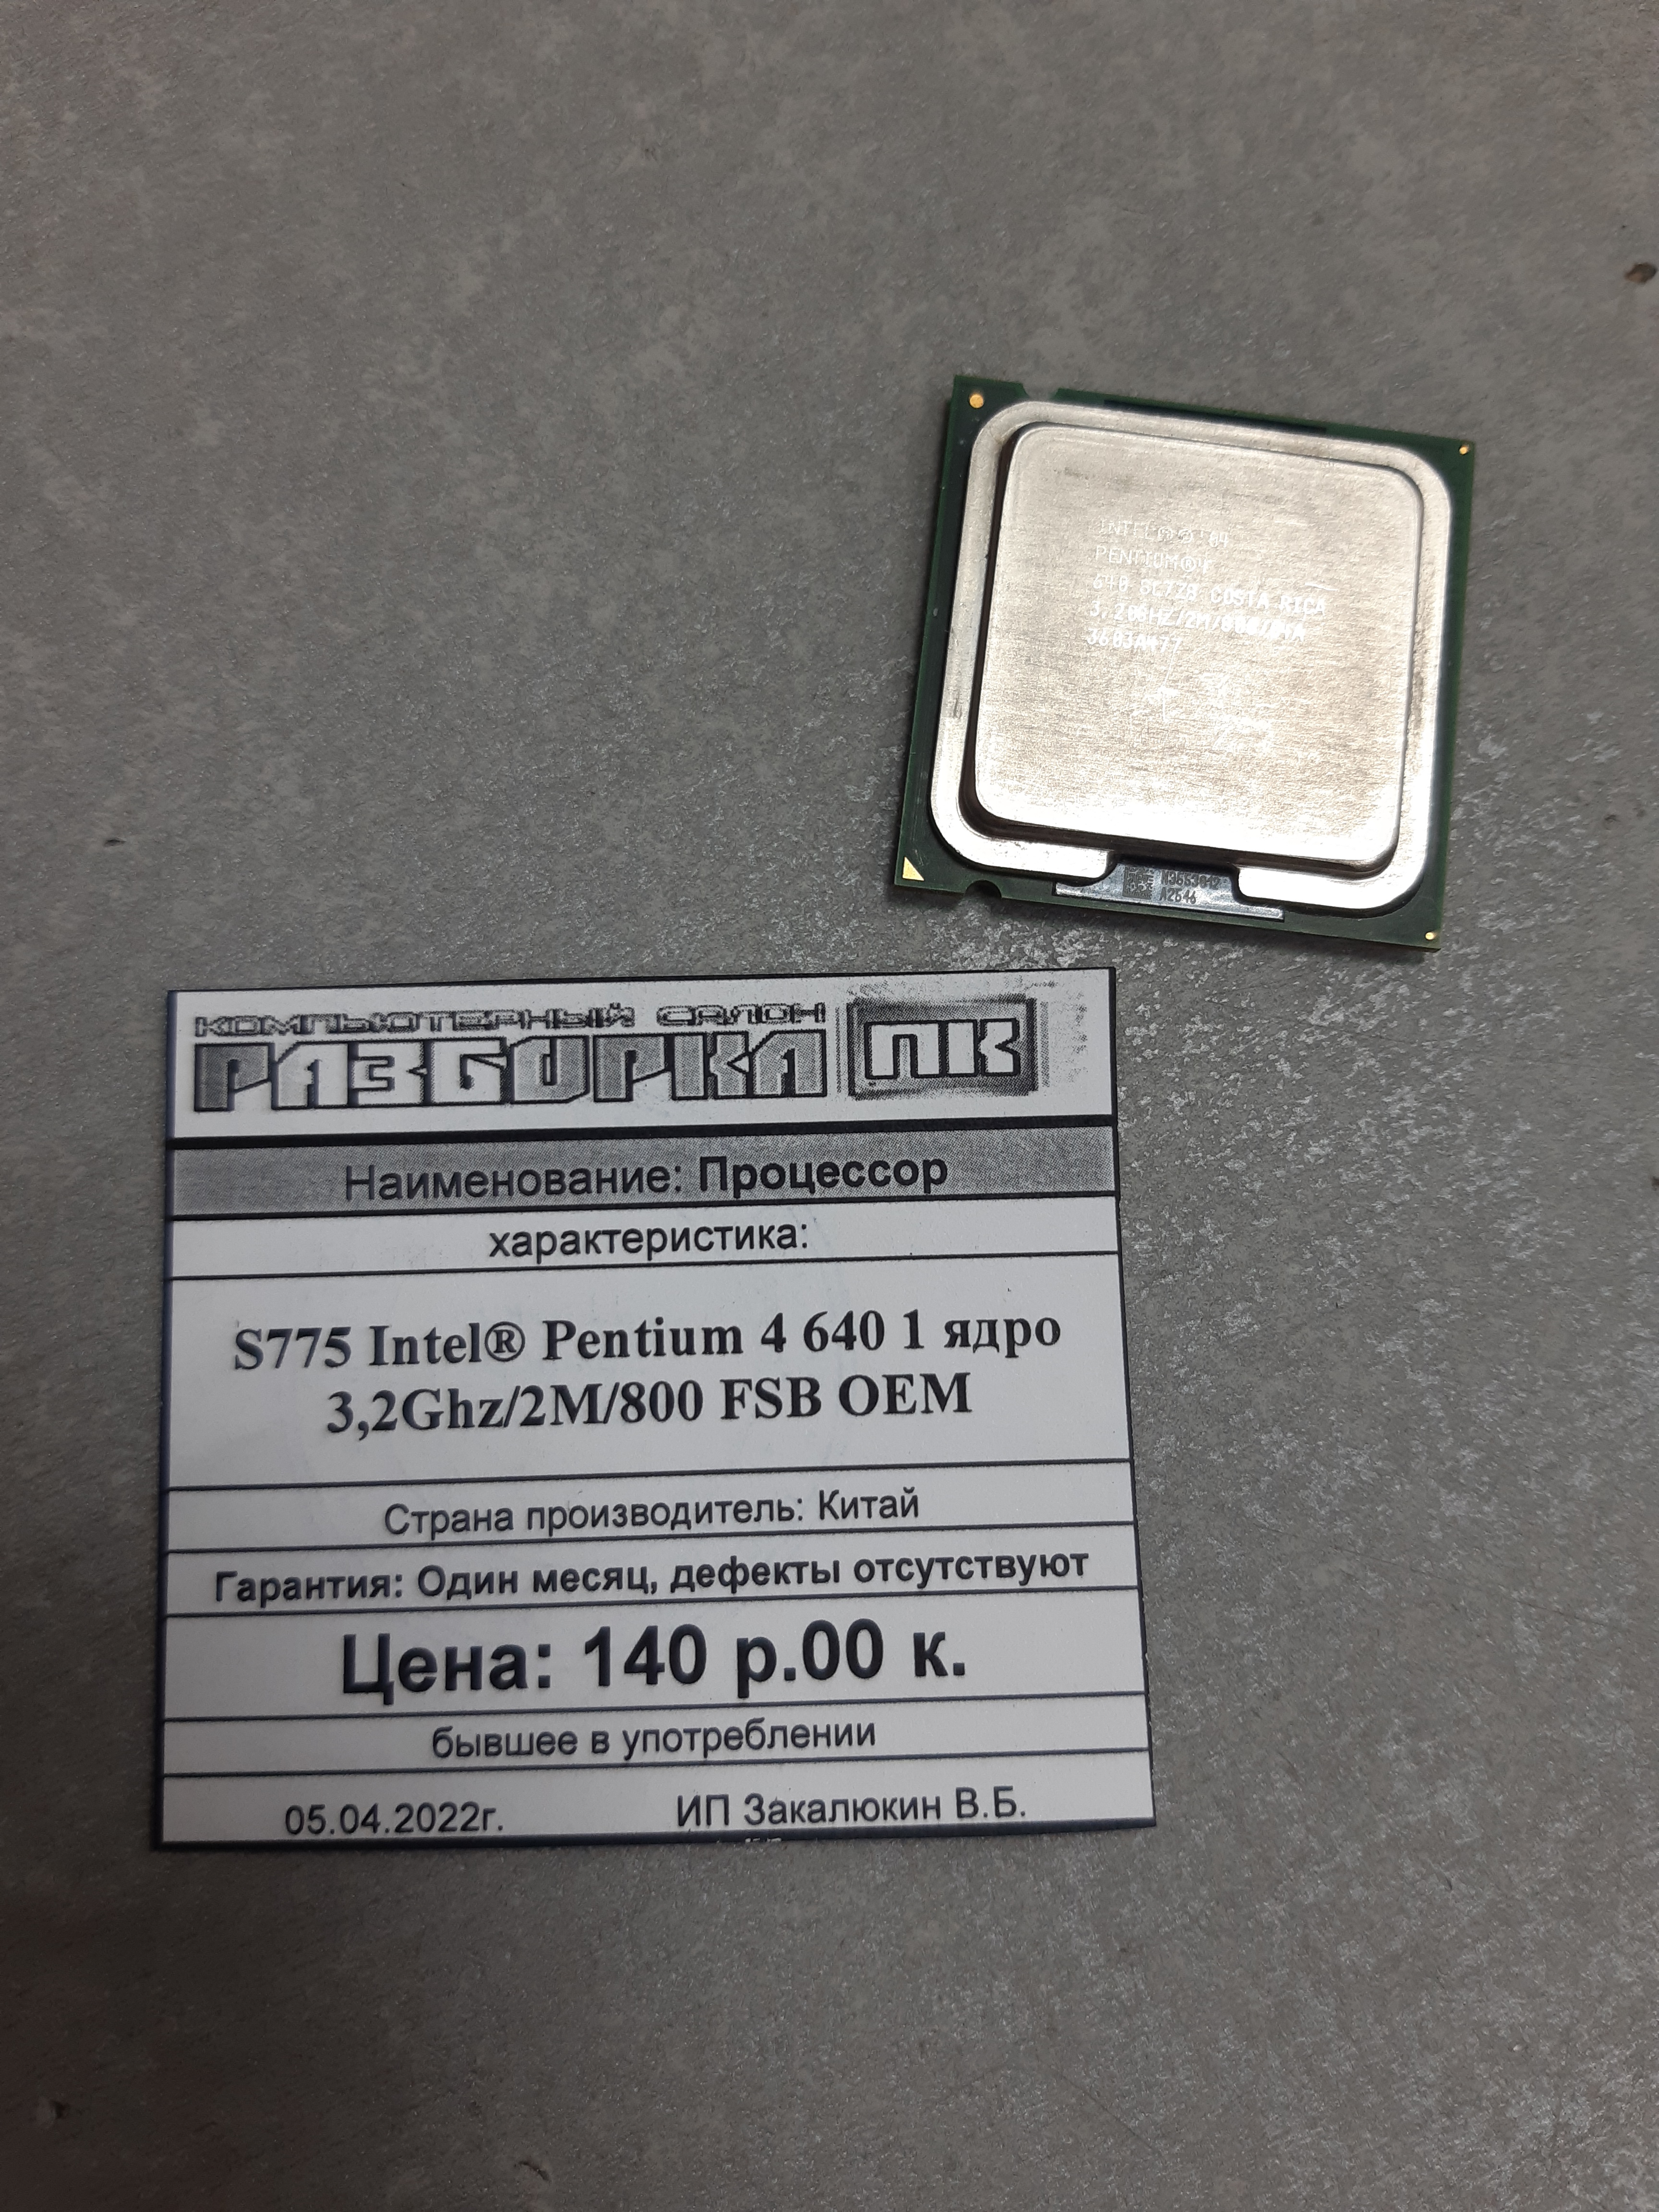 Процессор S775 Intel® Pentium 4 640 1 ядро 3,2Ghz/2M/800 FSB OEM